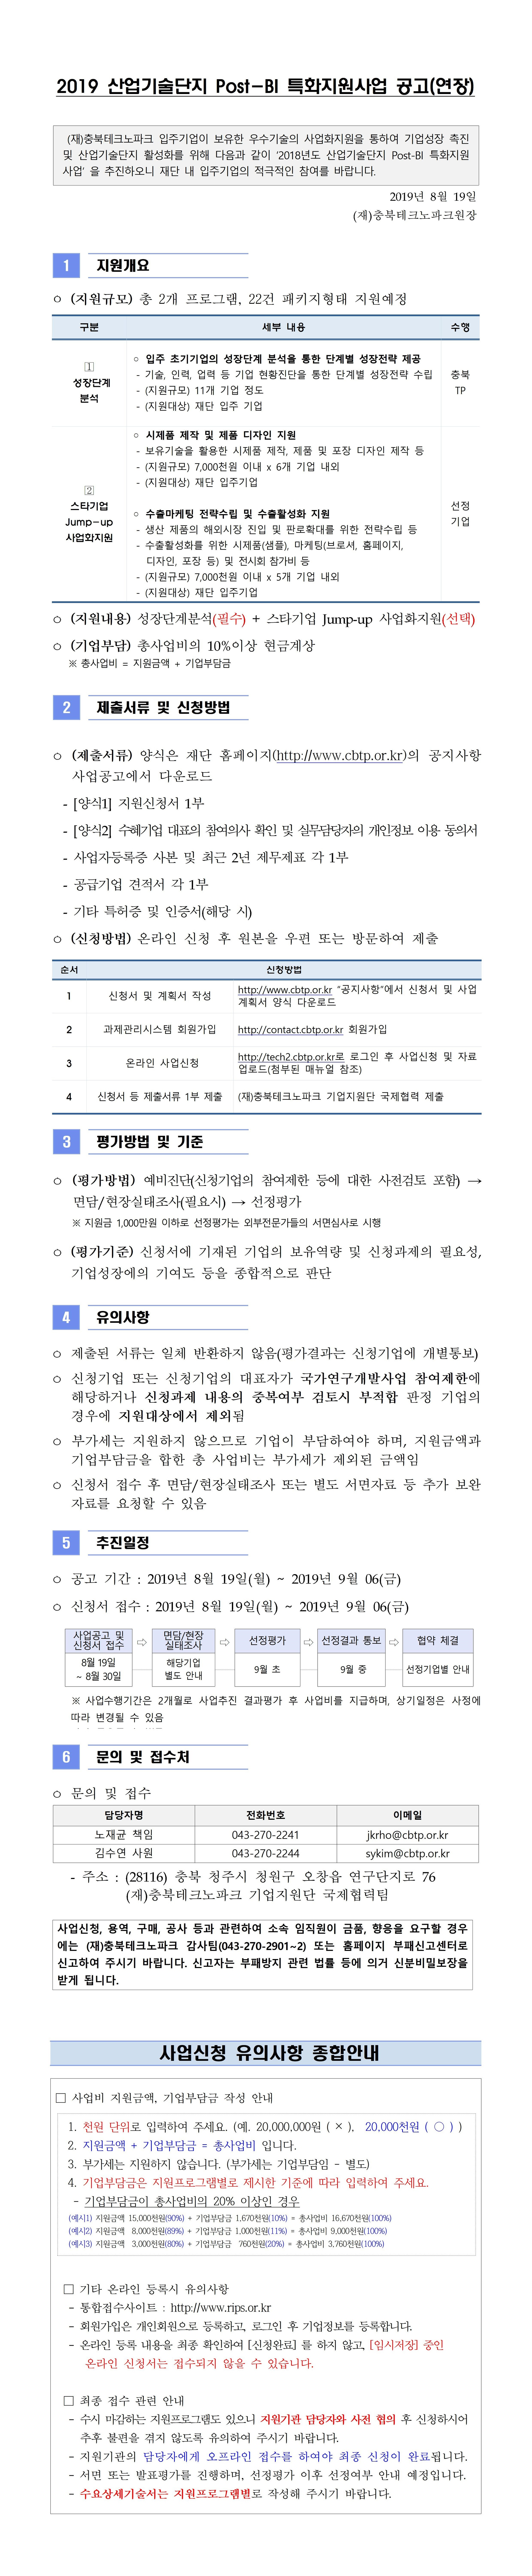 2019 산업기술단지 Post-BI 특화지원사업 공고문(연장).jpg